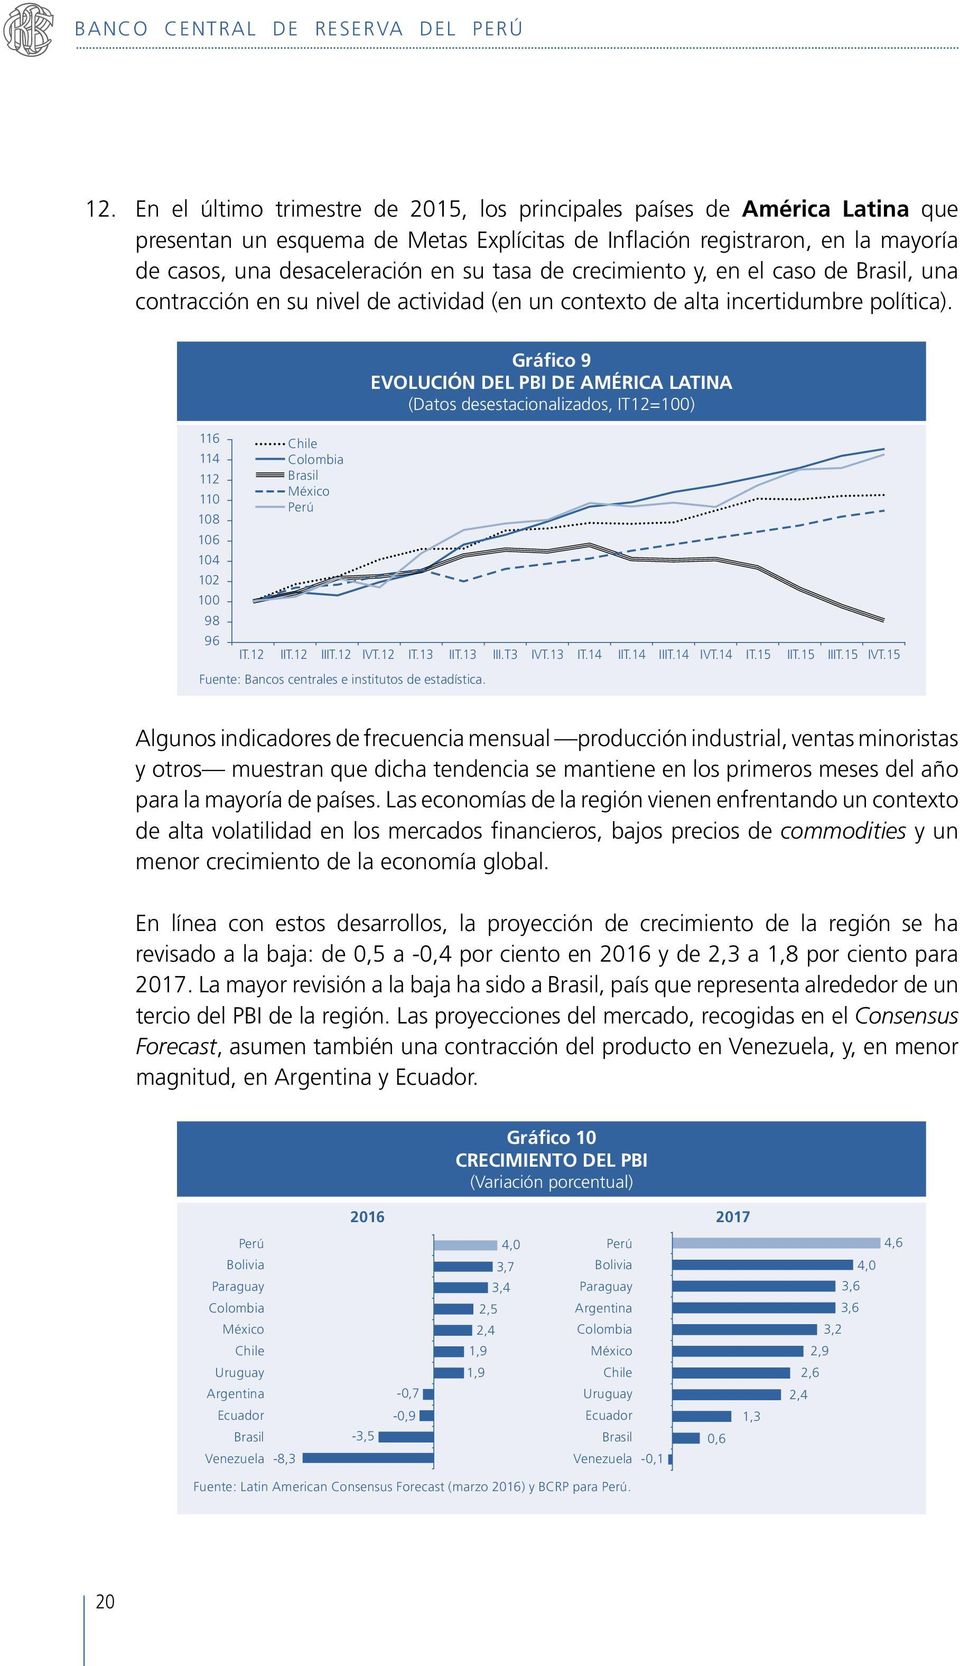 de crecimiento y, en el caso de Brasil, una contracción en su nivel de actividad (en un contexto de alta incertidumbre política).